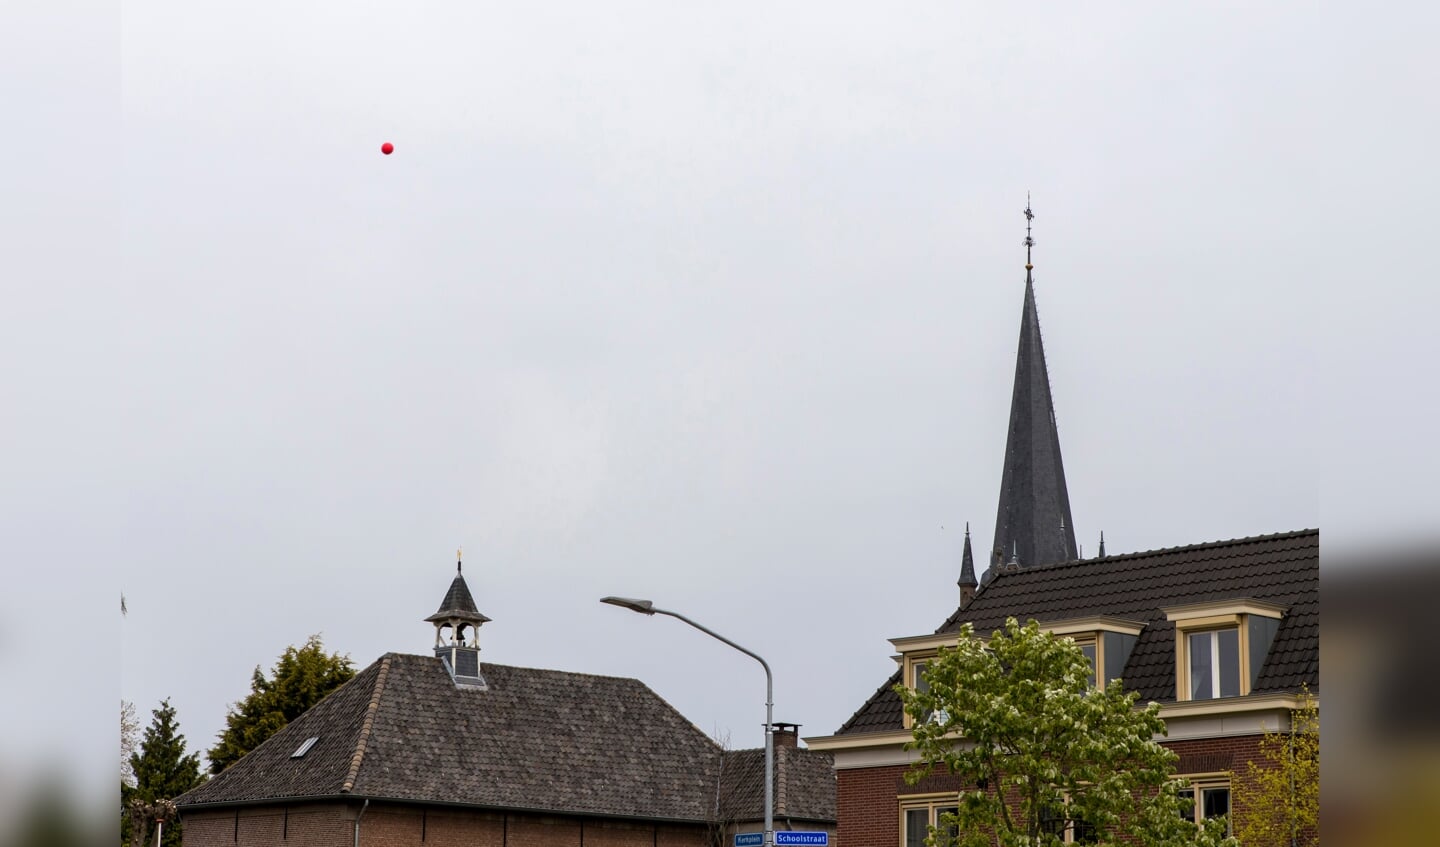 Actie van de Stichting Tegenwind op het Julianaplein in Beuningen. Een ballon wordt opgelaten tot een hoogte van 245 meter. 